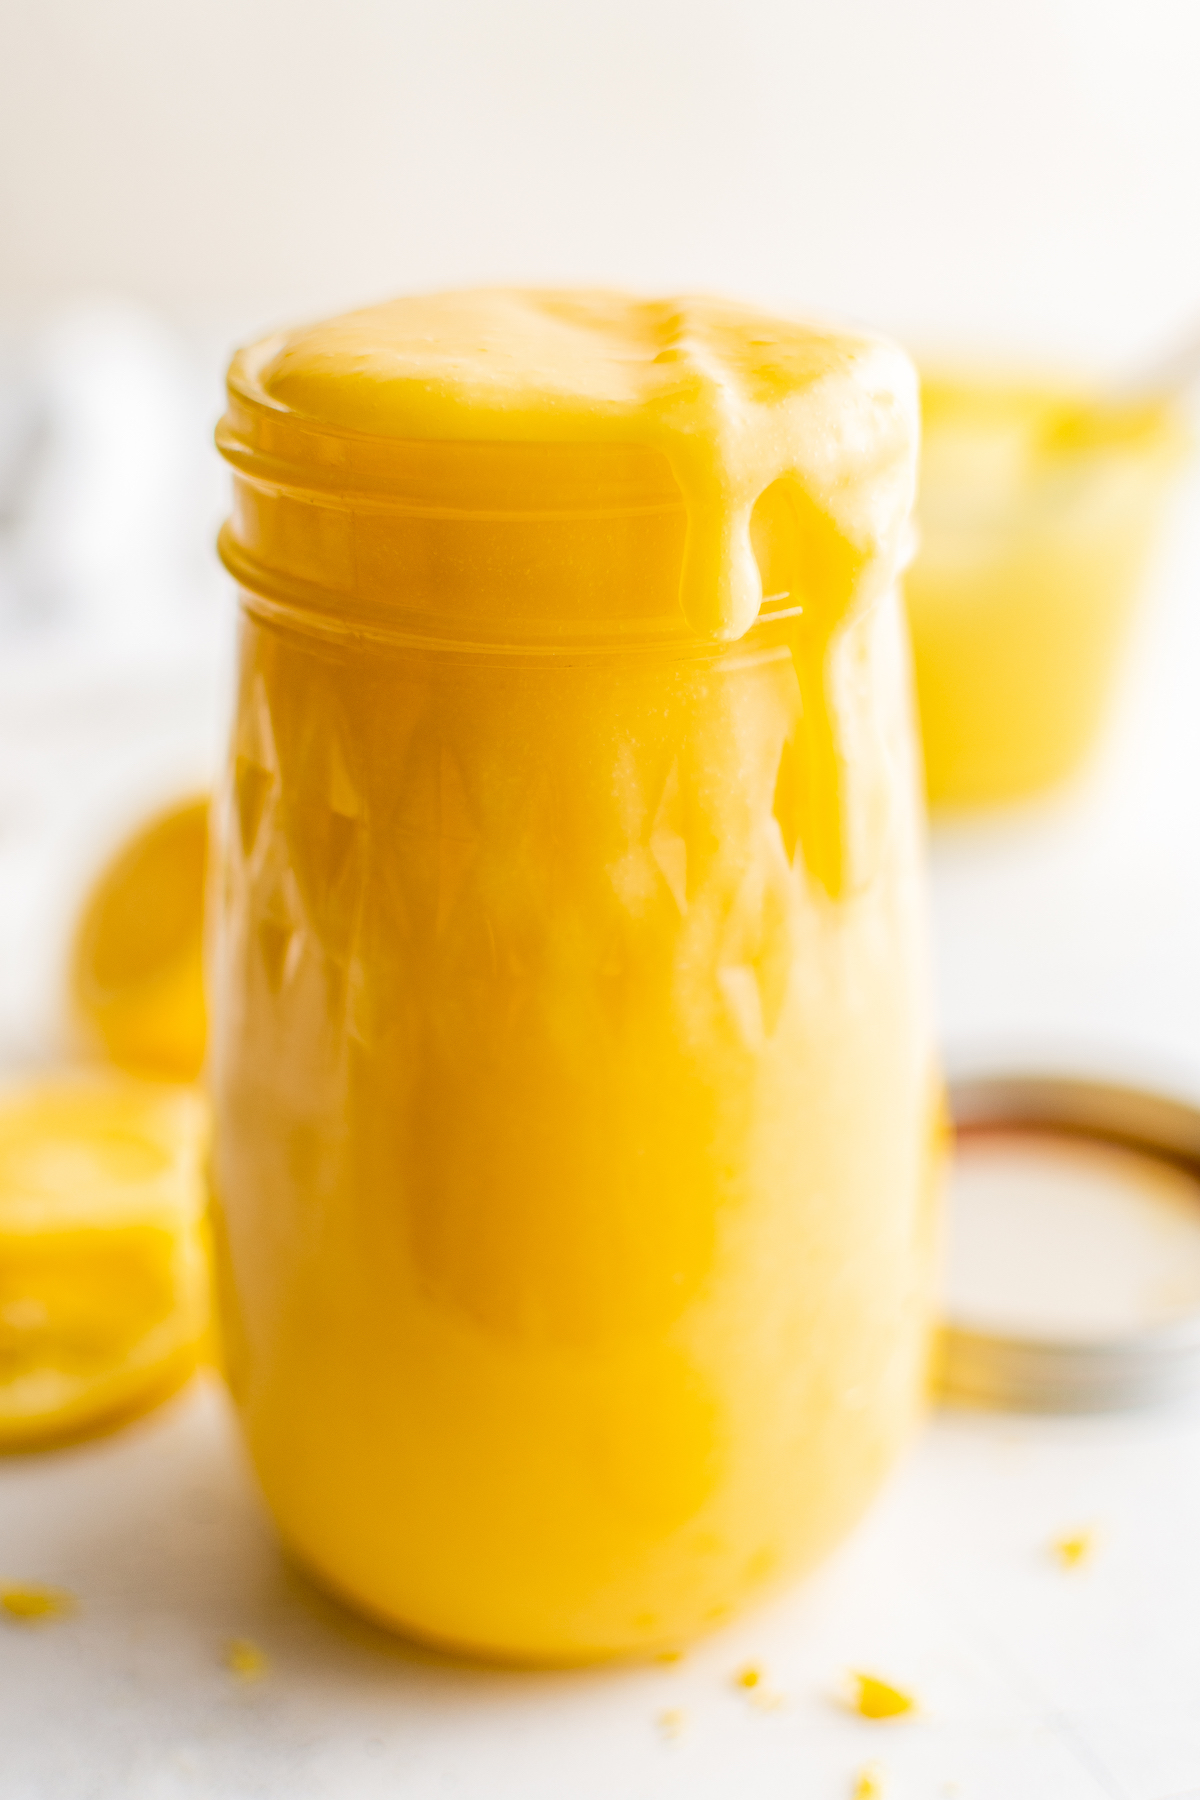 An open jar of creamy lemon dessert topping.